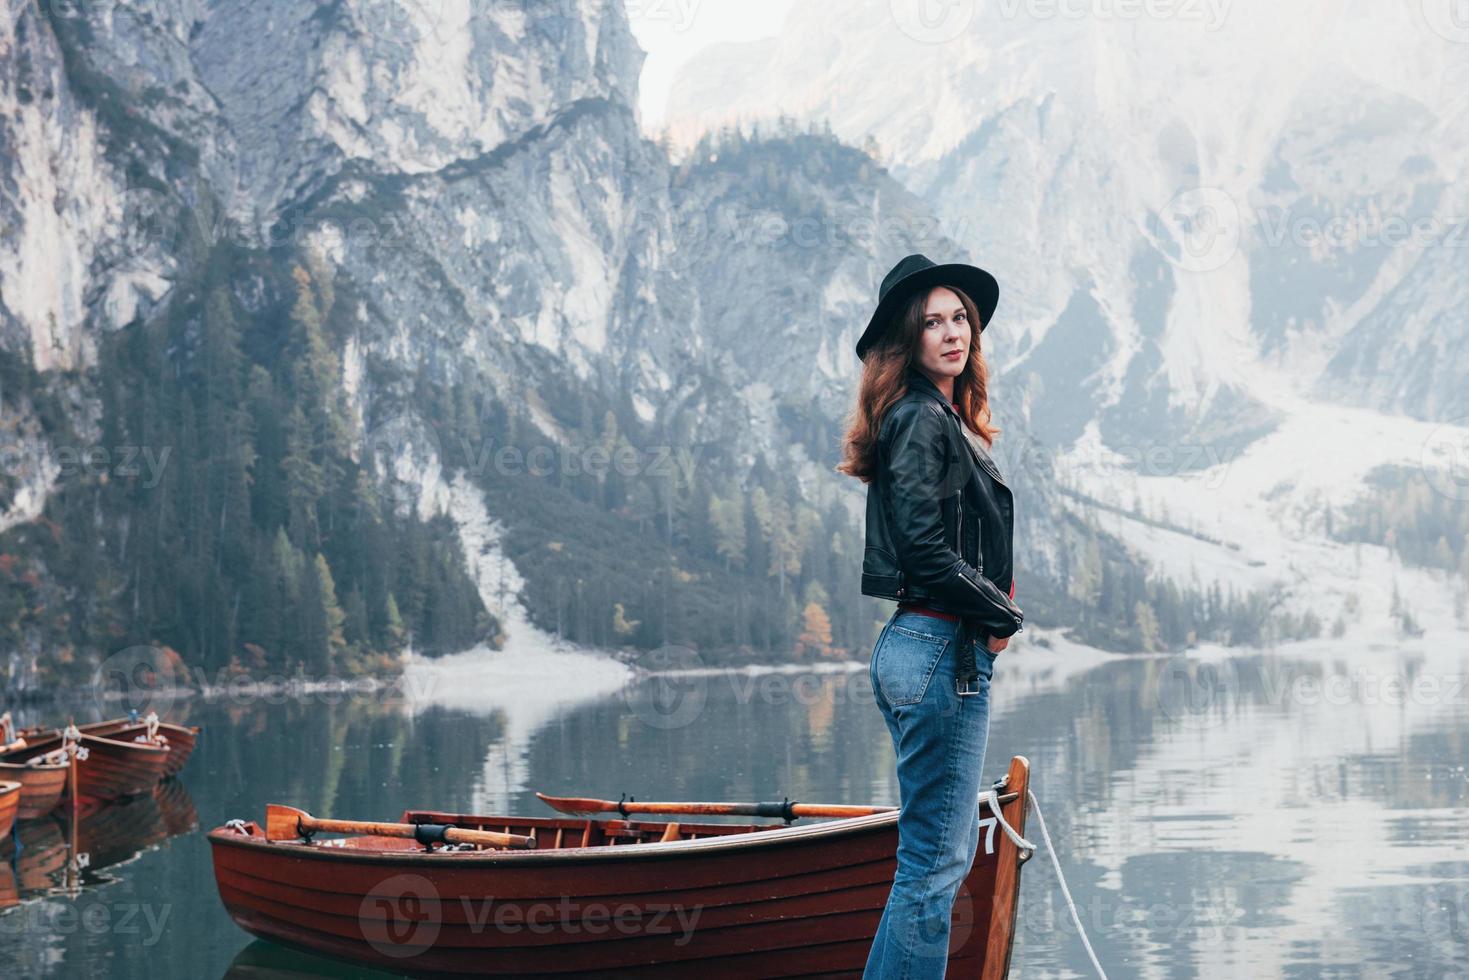 belleza de la naturaleza y la niña en una imagen. Mujer con sombrero negro disfrutando del majestuoso paisaje de montaña cerca del lago con barcos foto